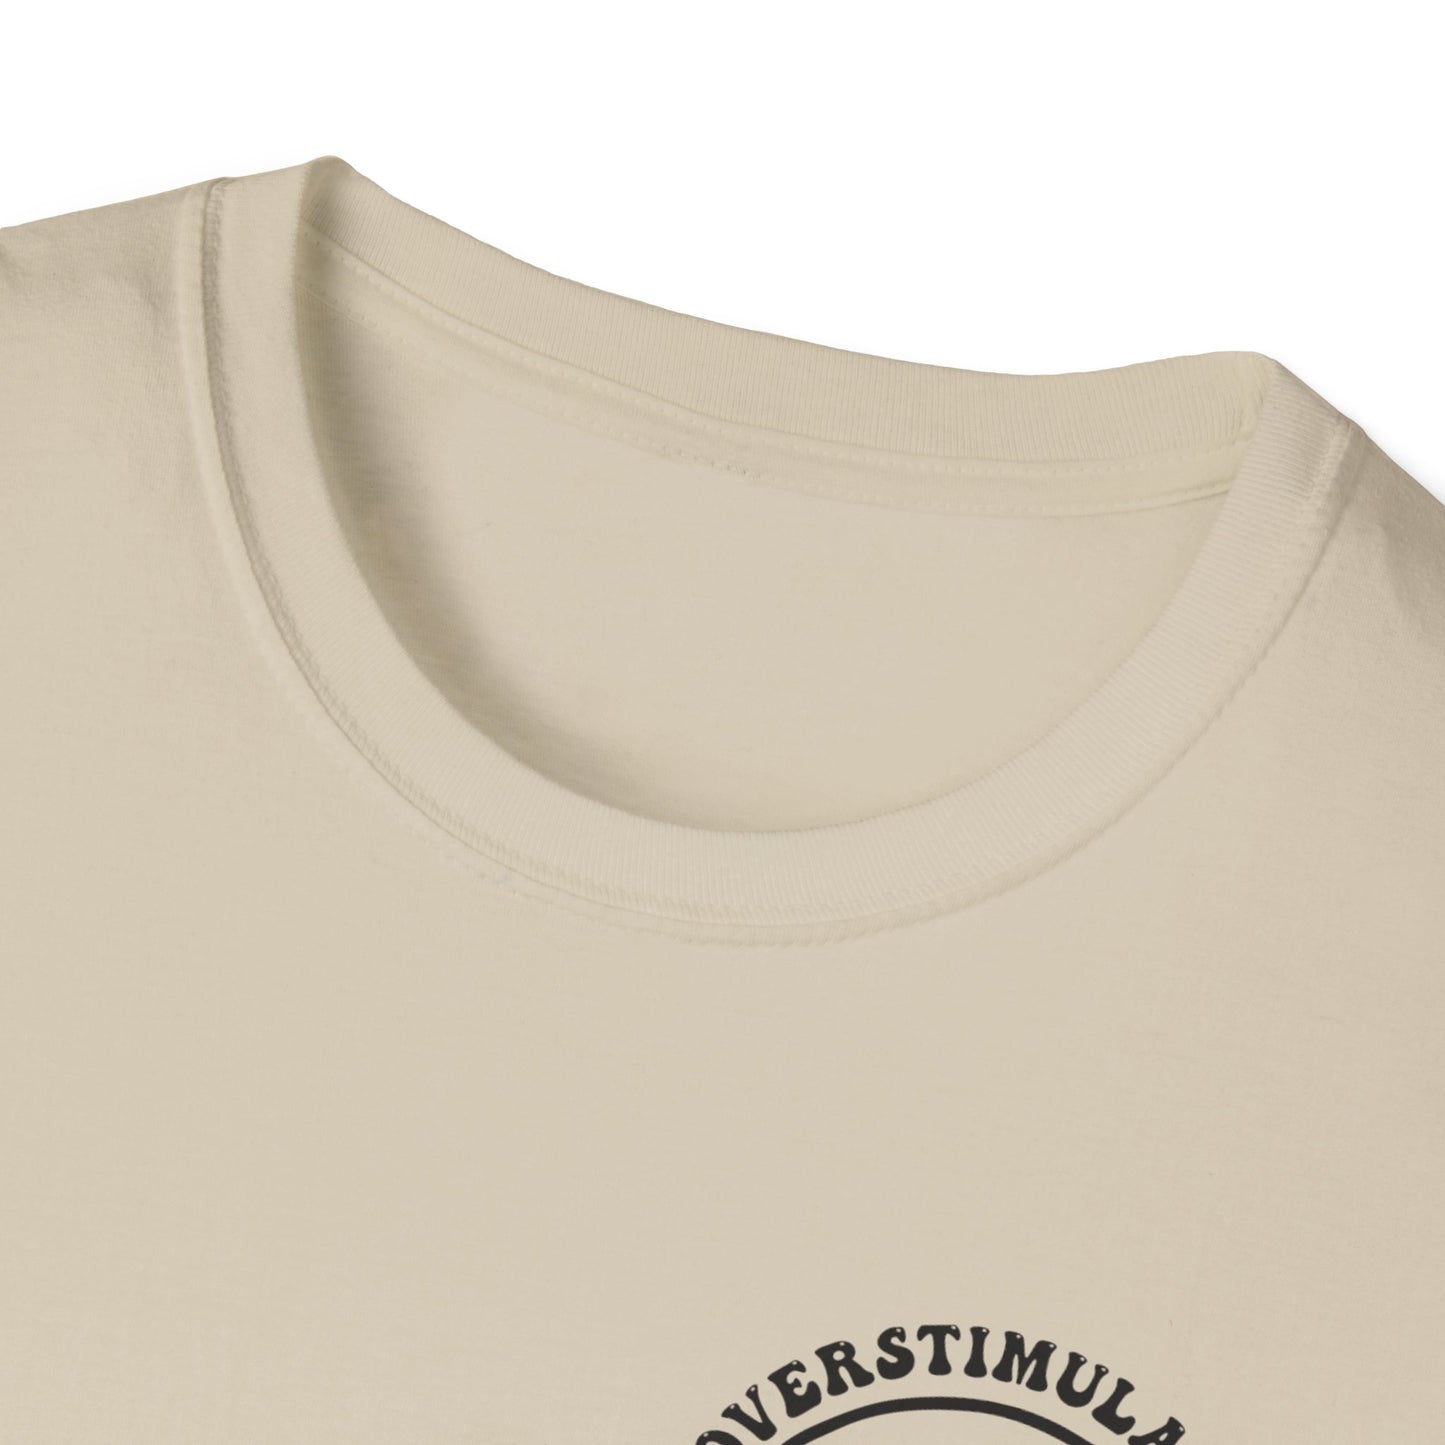 Overstimulated ERA - Unisex Softstyle T-Shirt